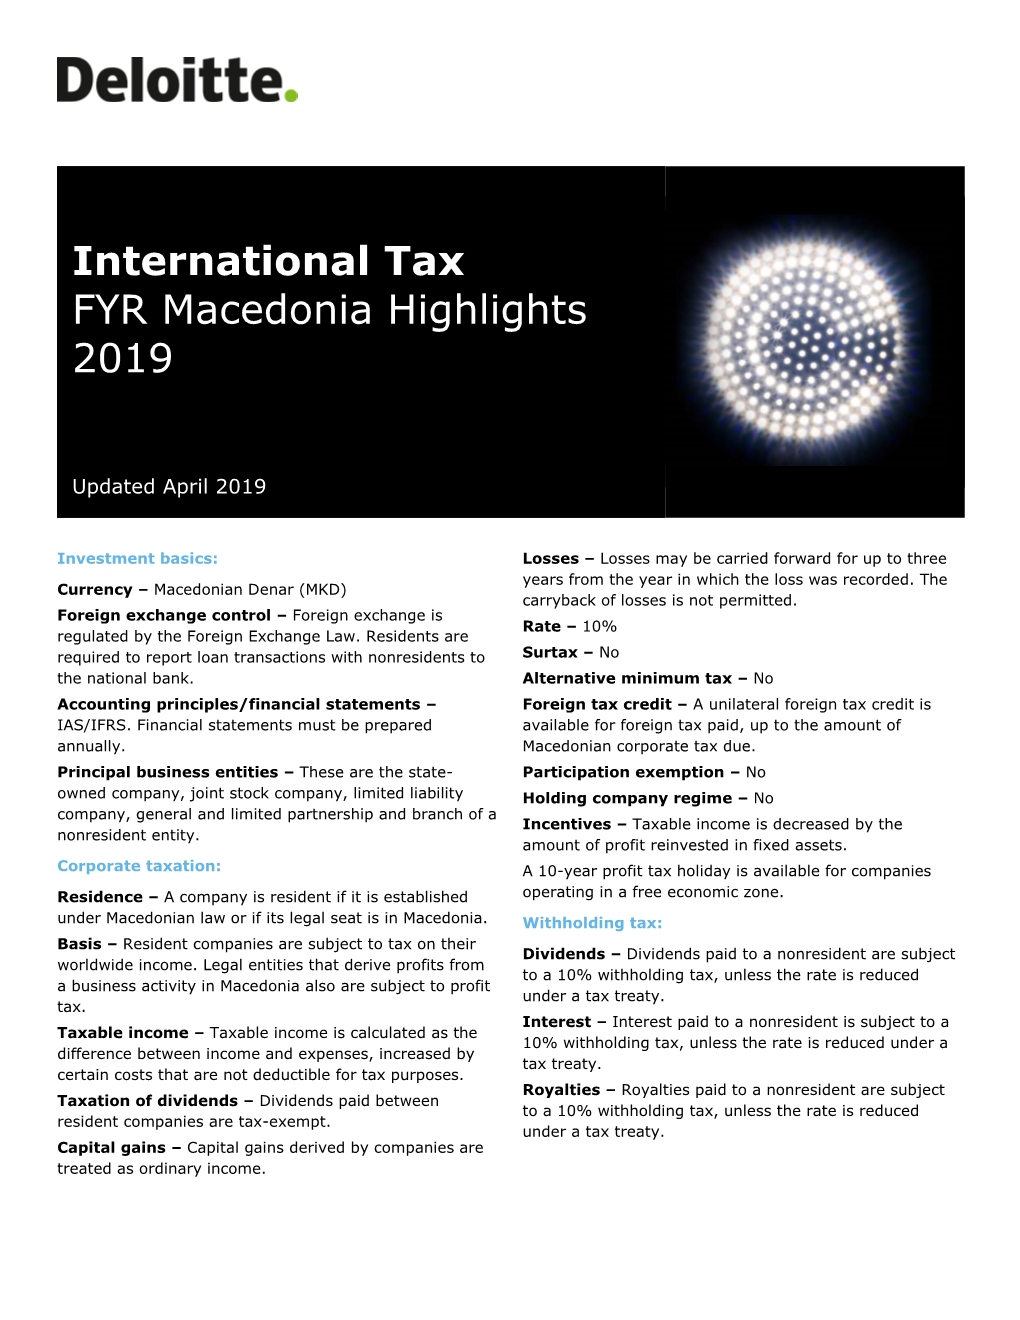 Macedonia Highlights 2019